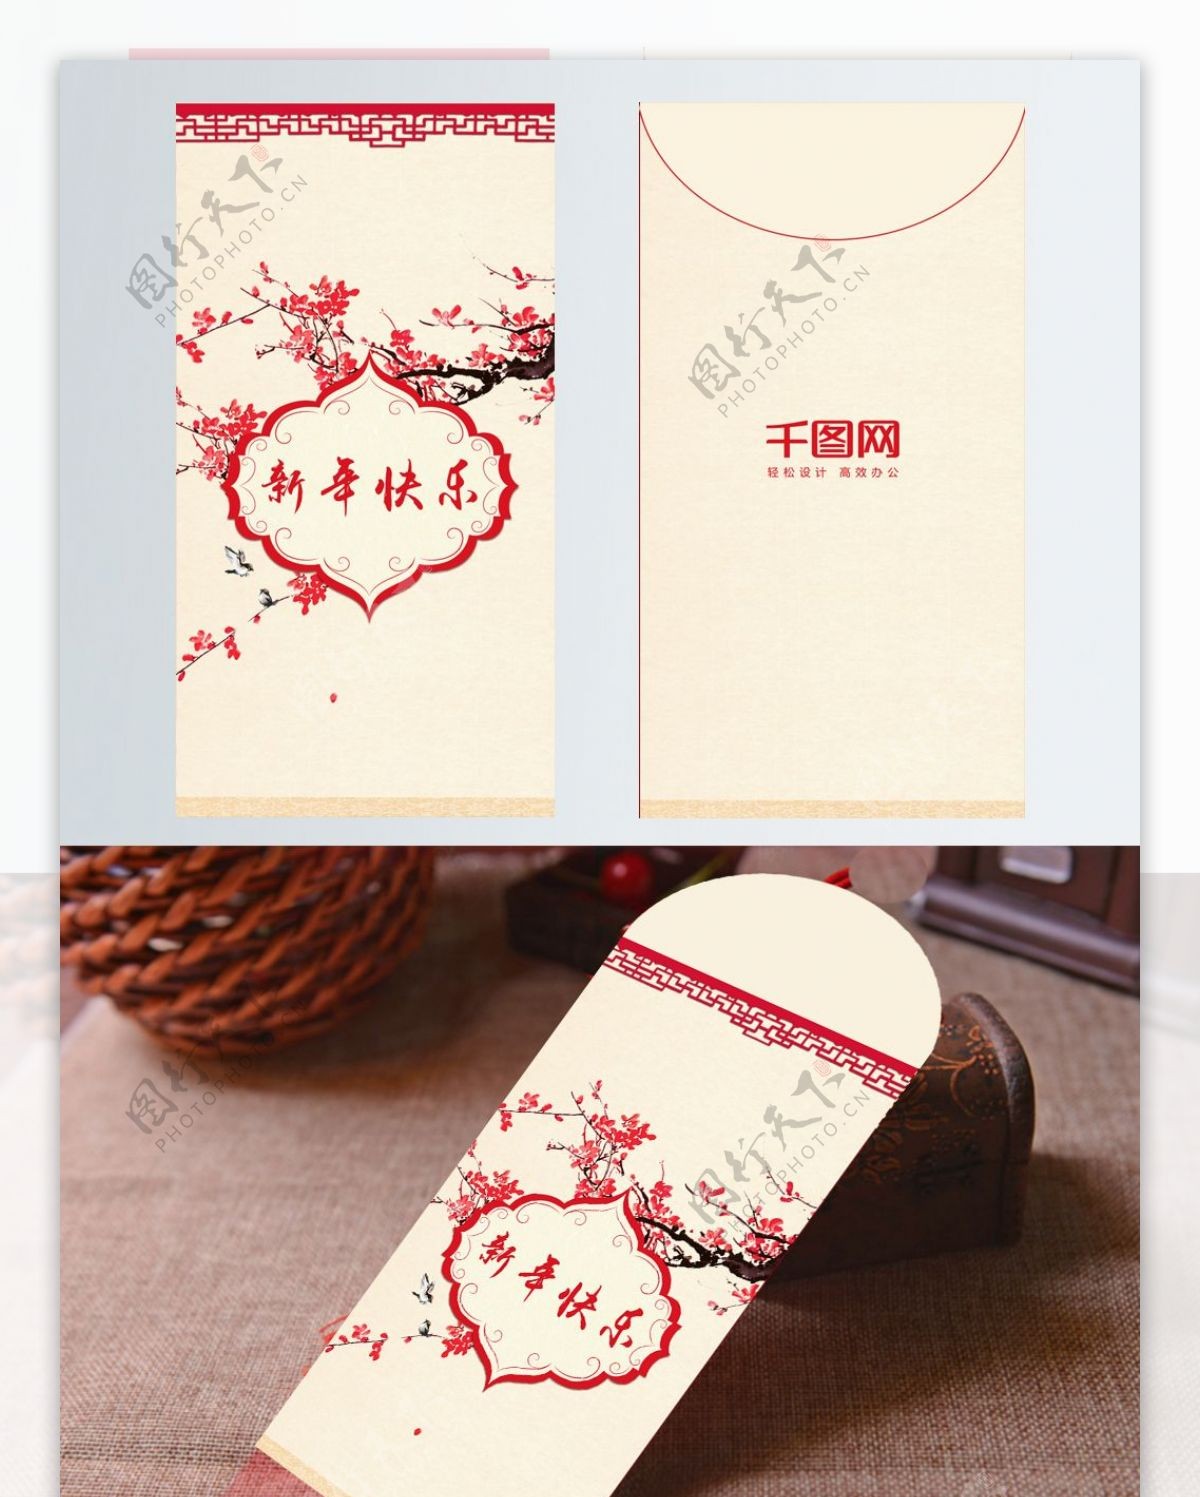 简约中国风新年红包设计模板